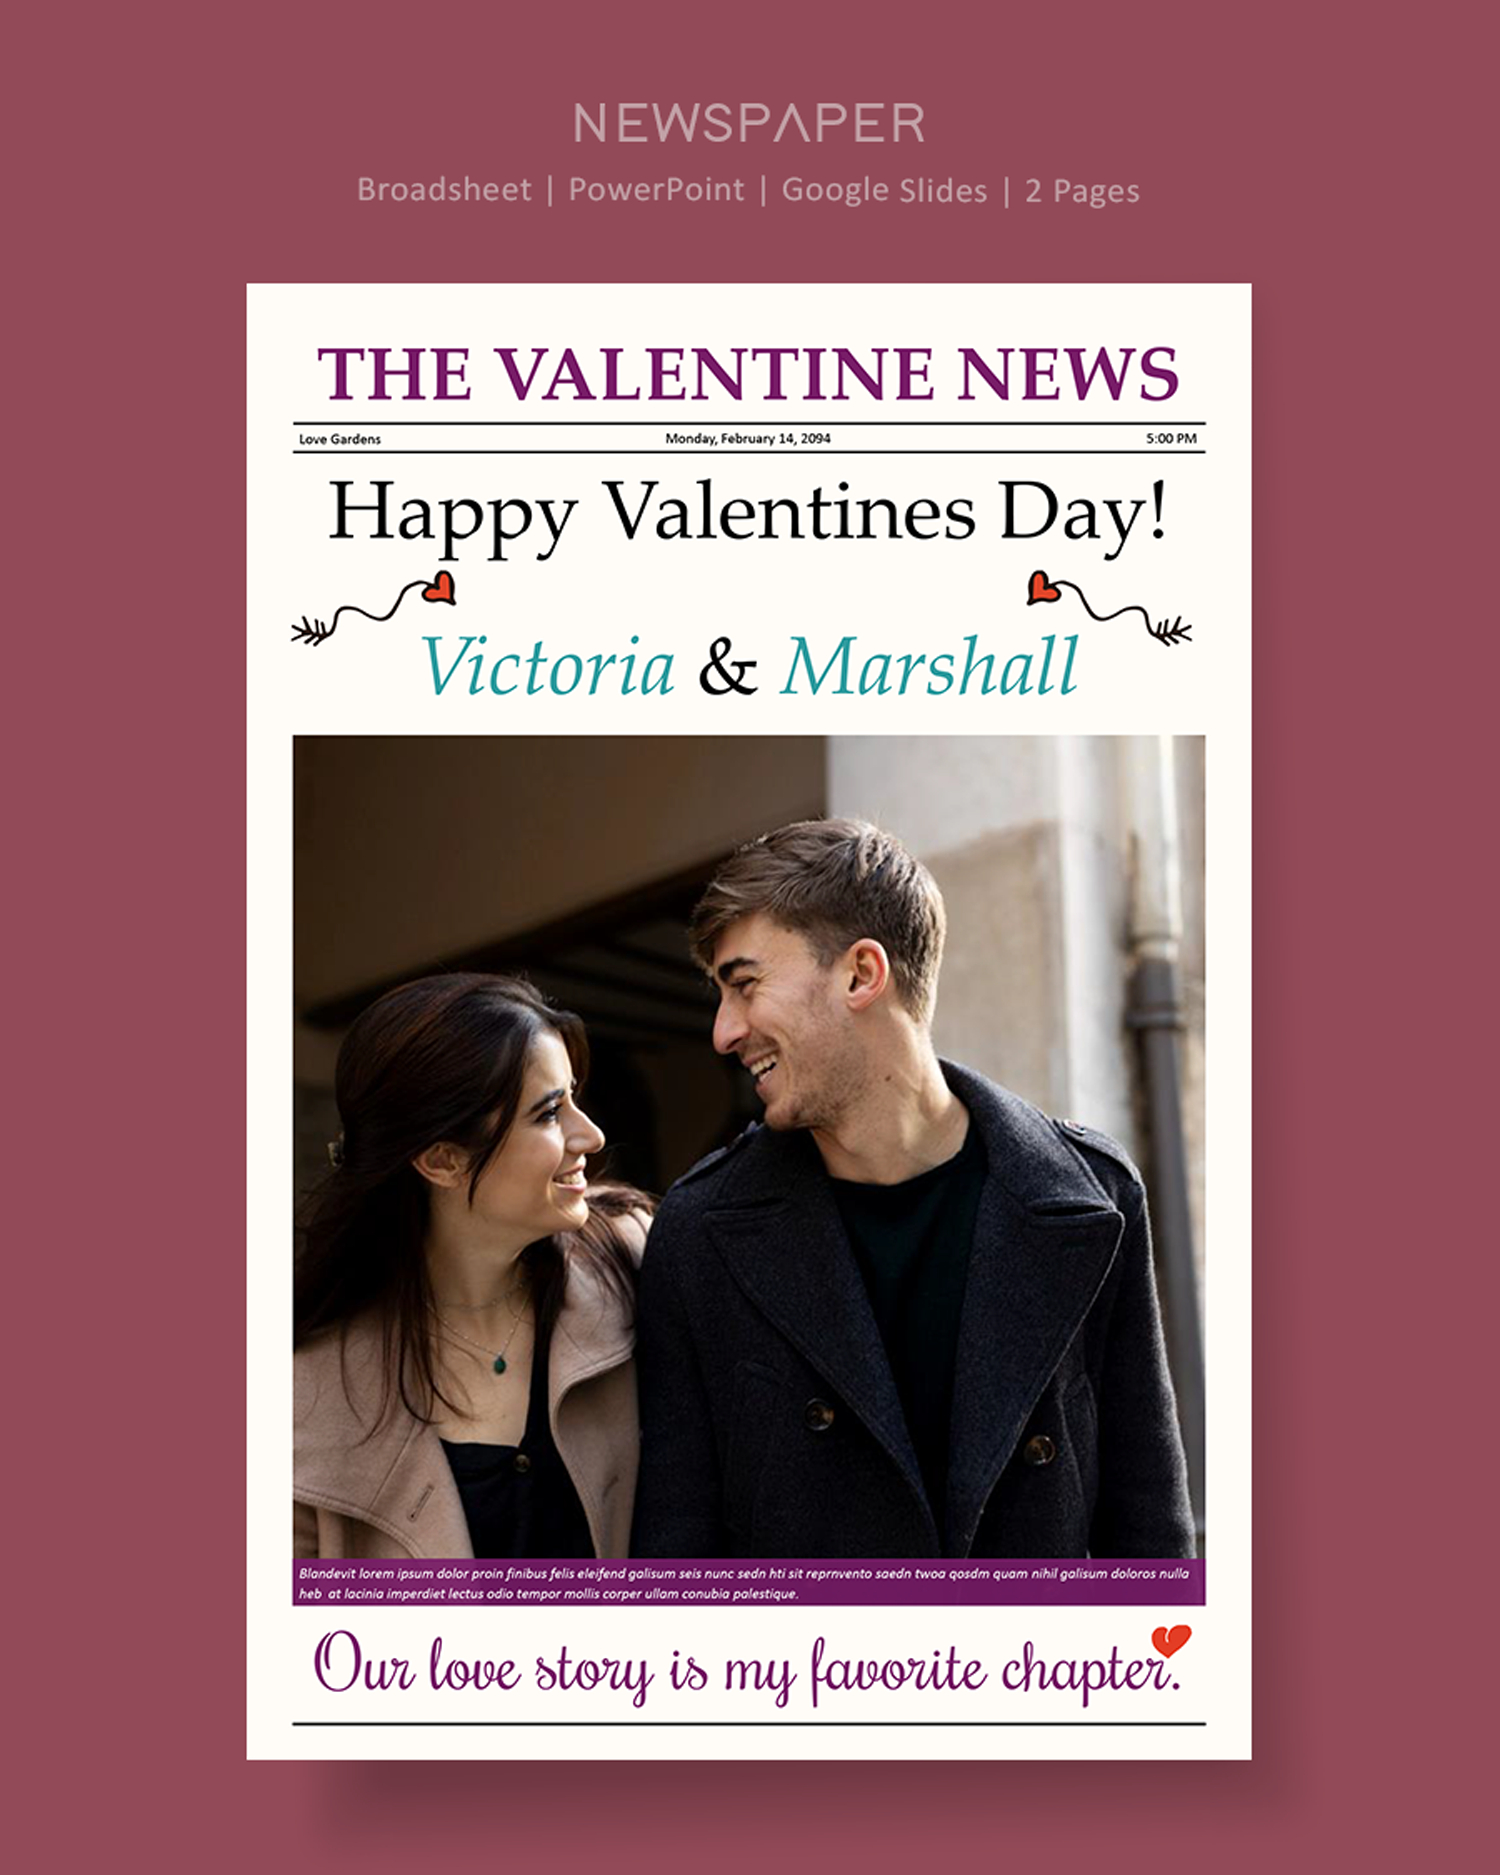 Valentine Day Celebration Newspaper Template - PowerPoint, Google Slides